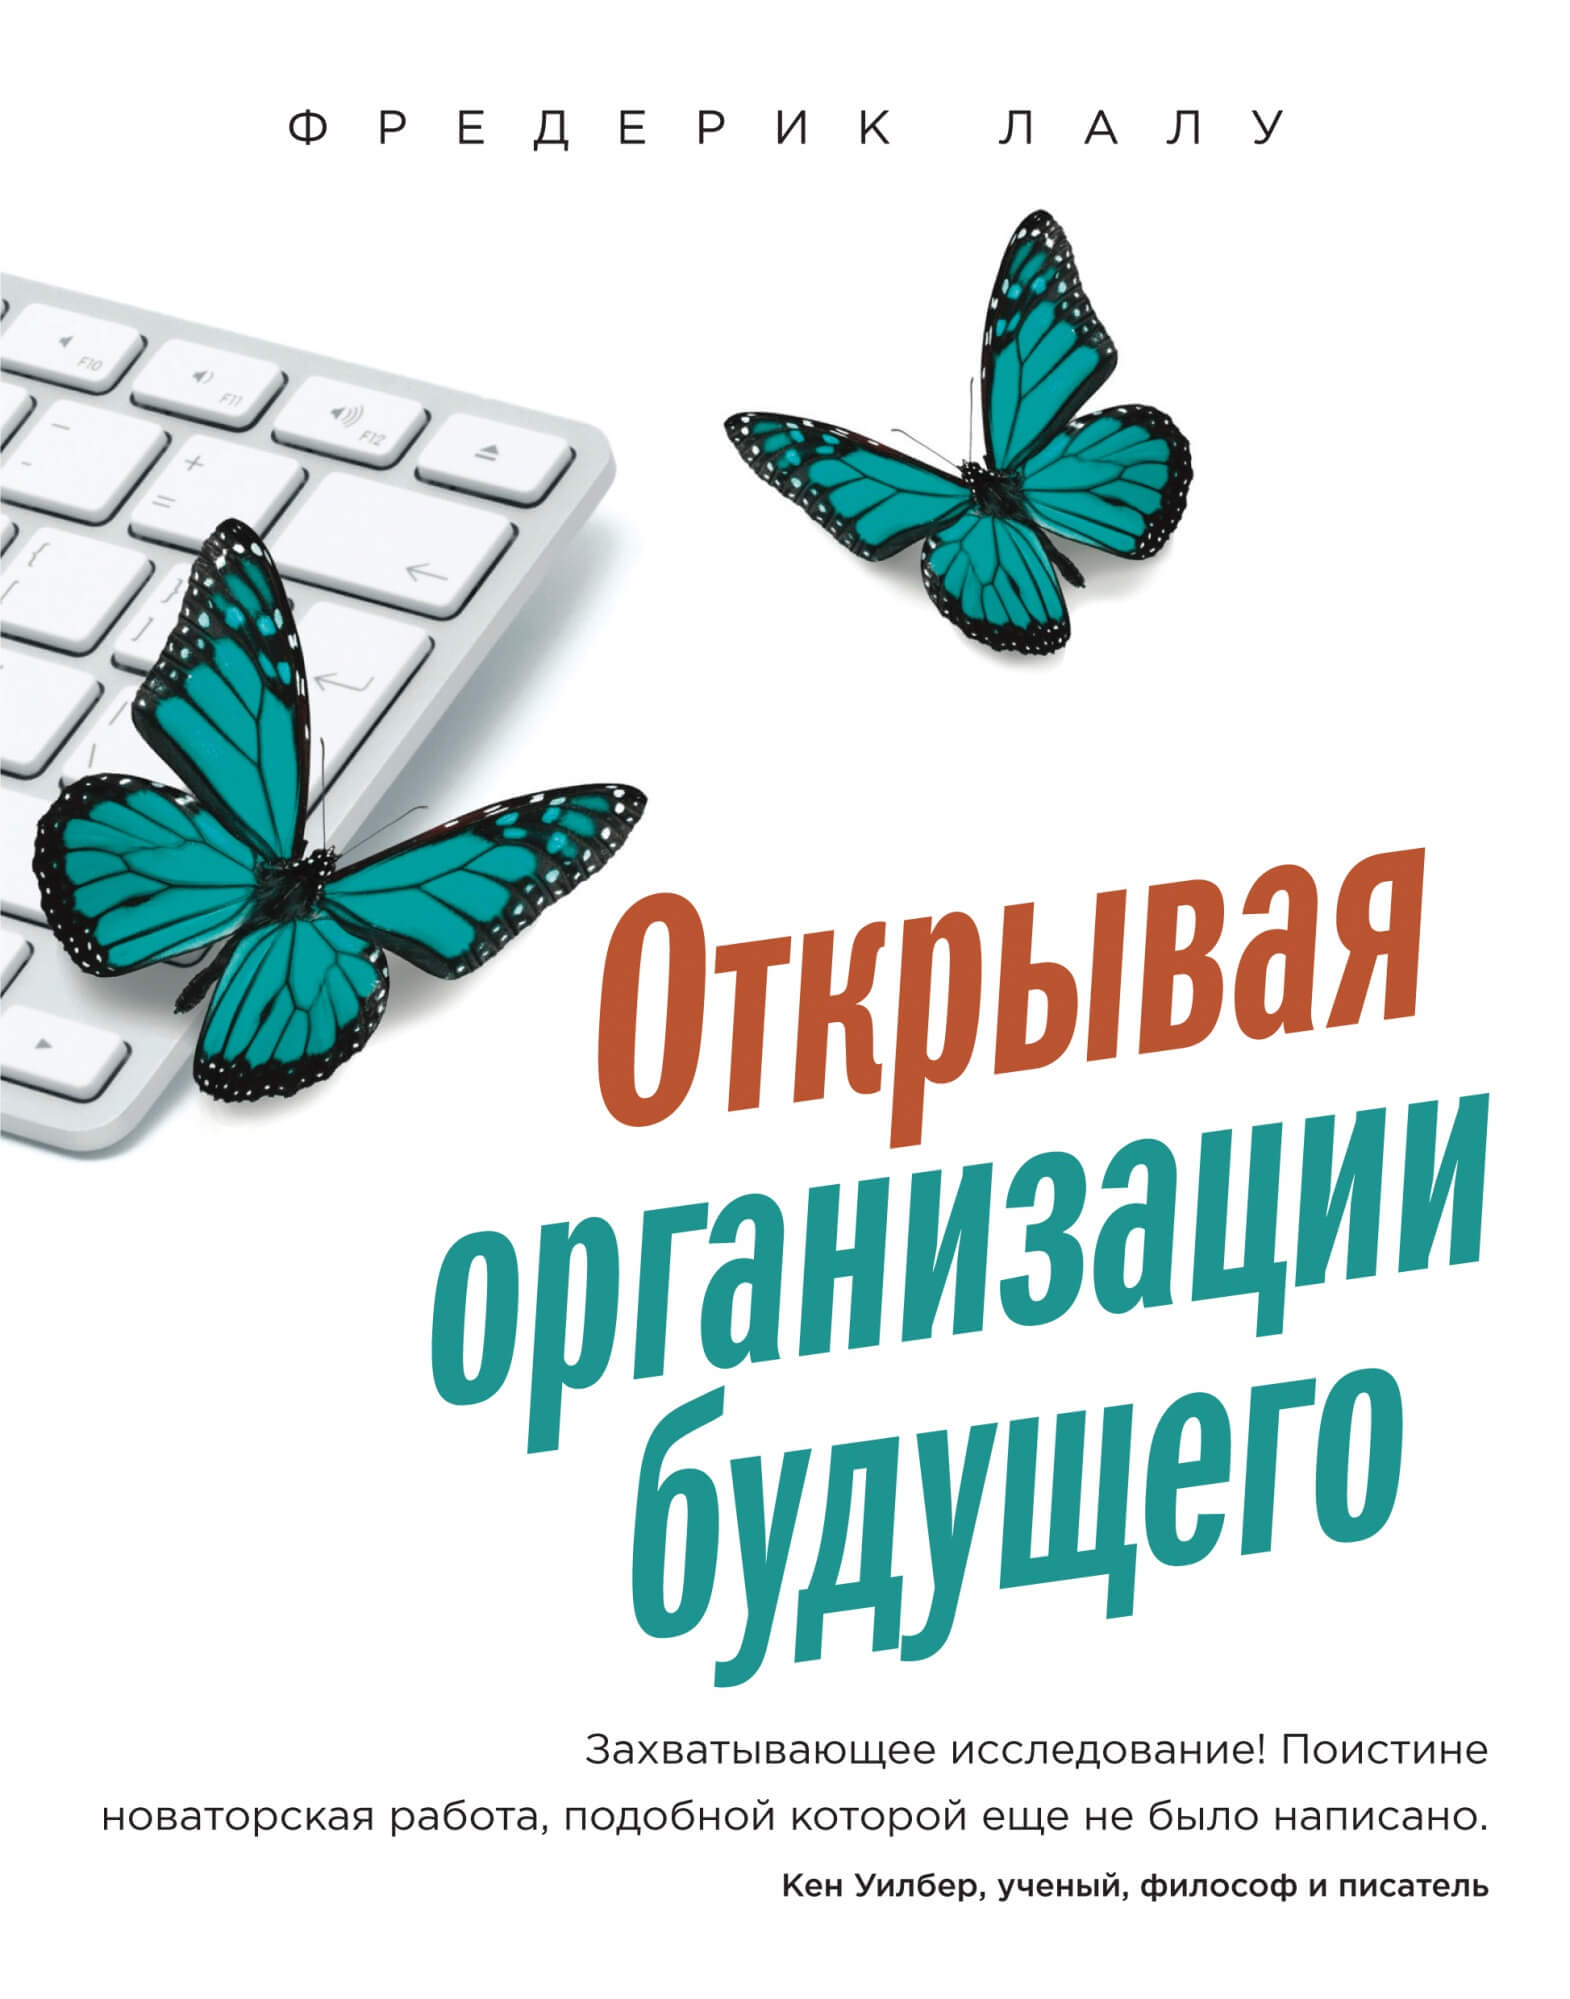 Otkryvaya_org_cover1.jpg